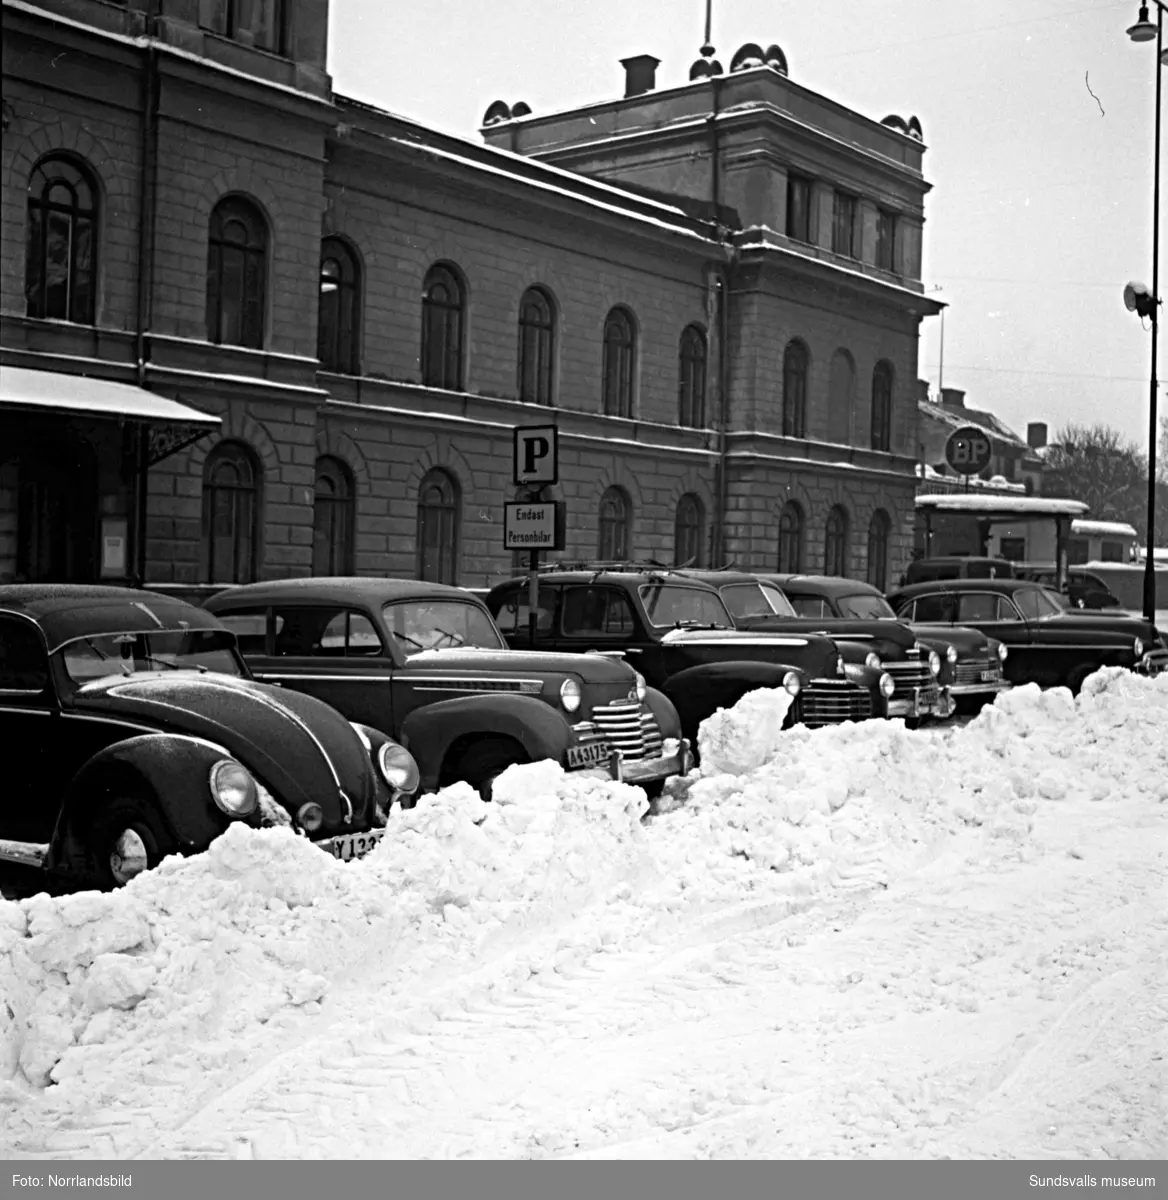 Trafik- och parkeringsproblem i Stenstaden en snörik vinter. Bland annat vid Stadshuset, Sjögatan och Packhusgatan.